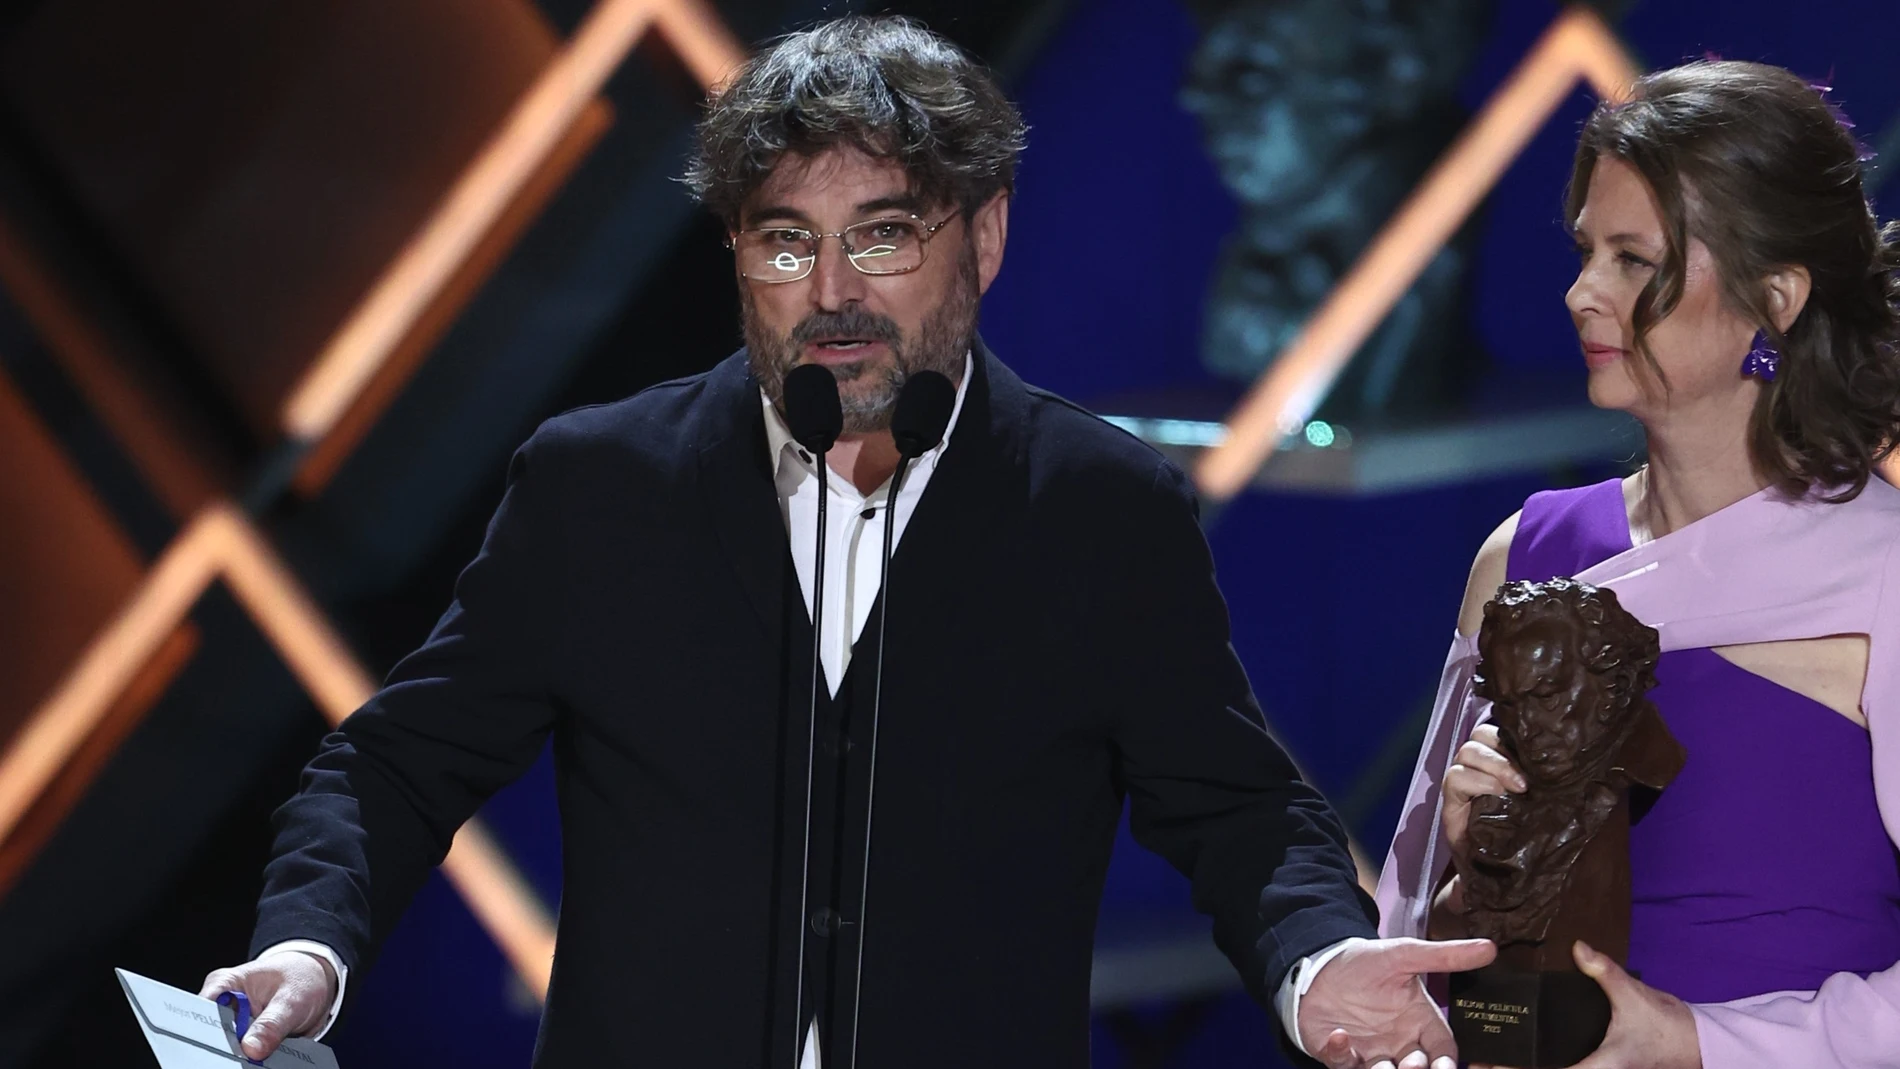  El presentador Jordi Évole entregando un premio en la XXXVII edición de los Premios Goya